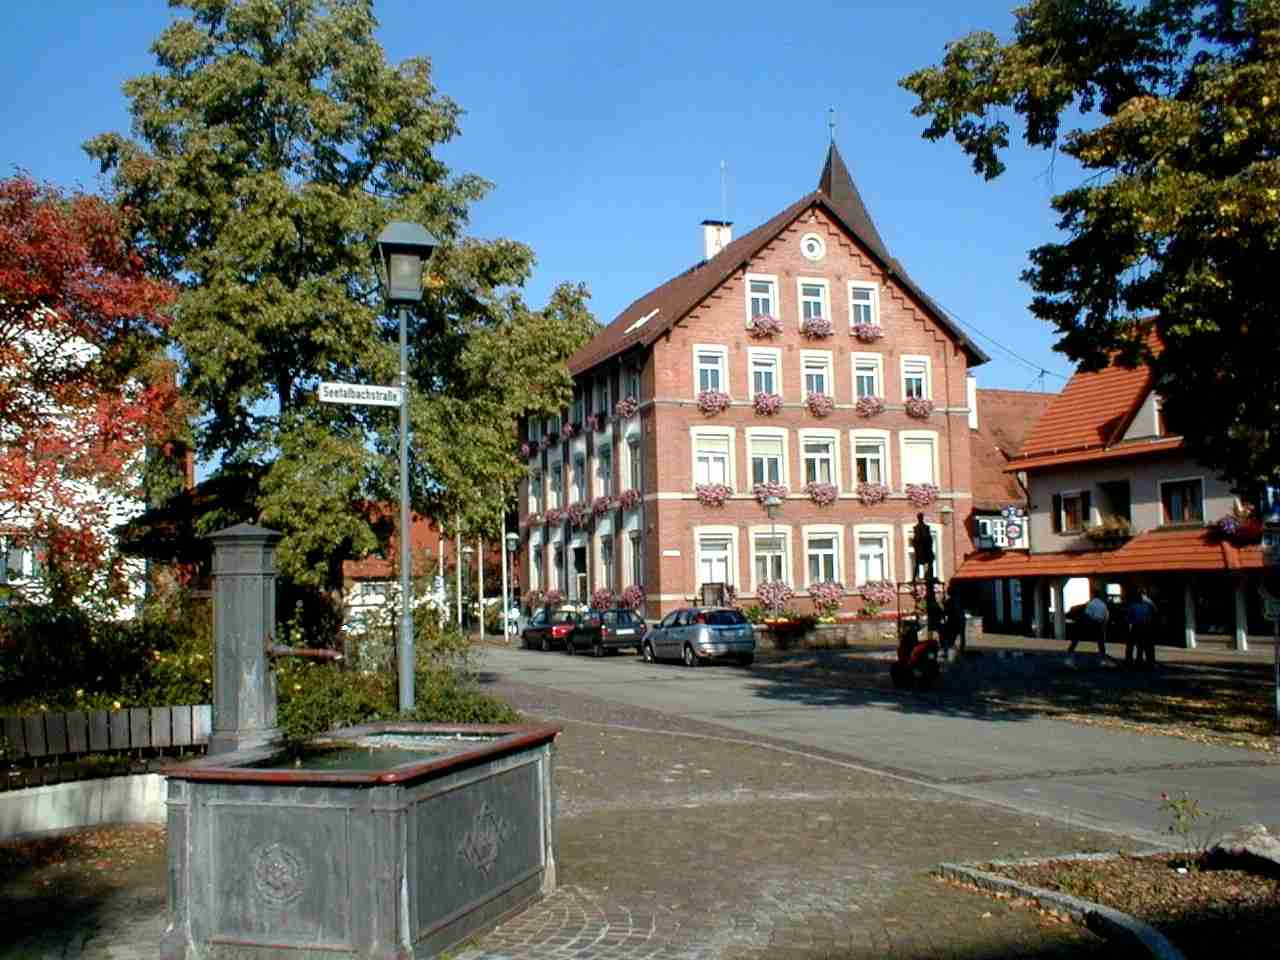 Rathaus Kuchen
 Gemeinde kuchen rathaus — Поиск по картинкам — [RED]